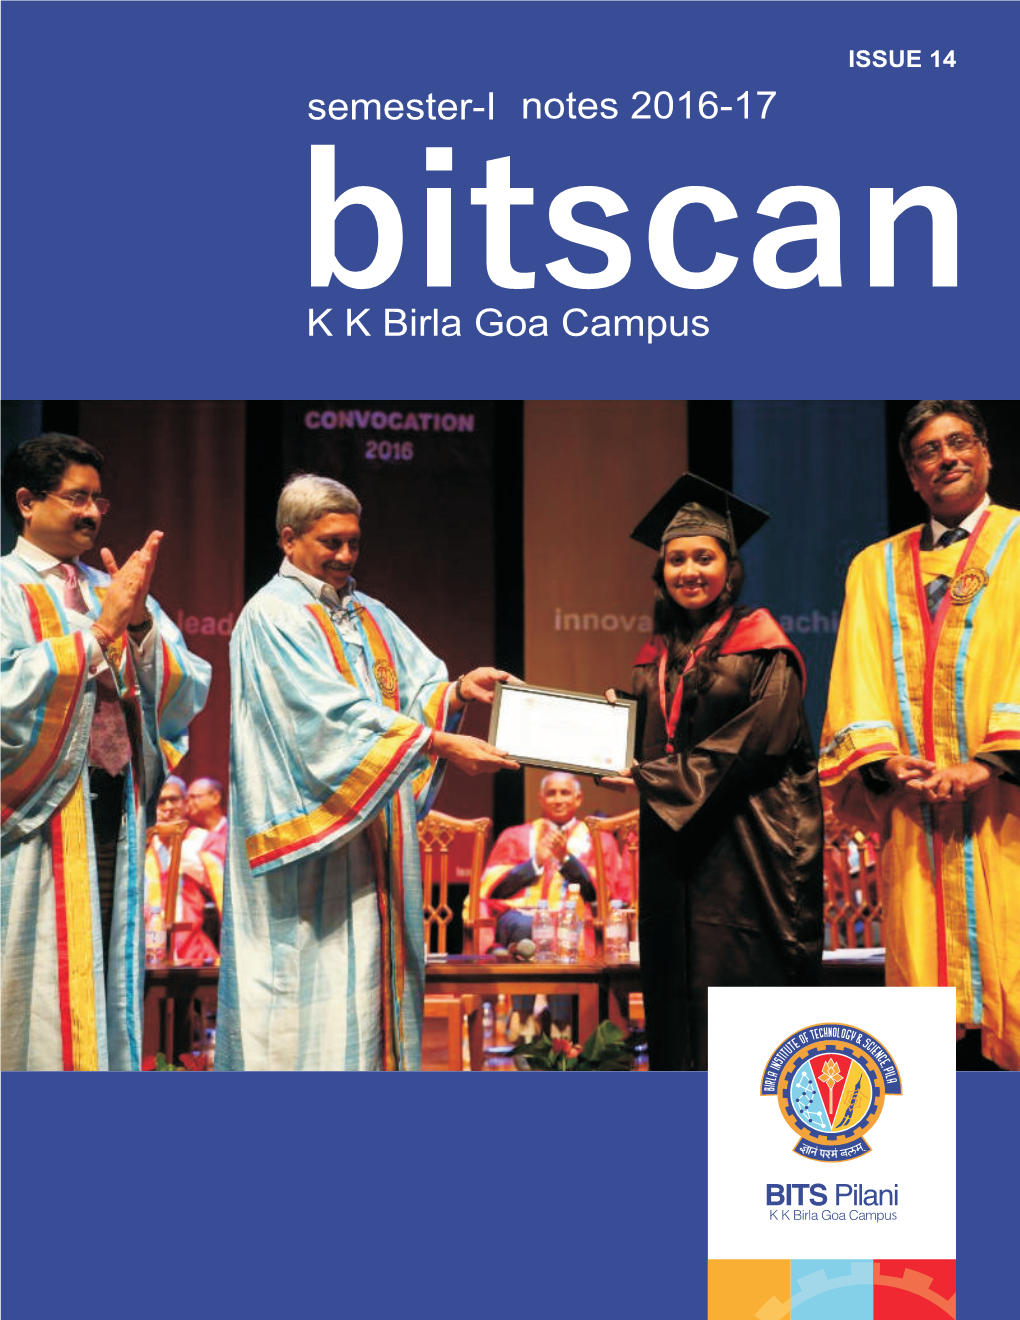 Bitscan K K Birla Goa Campus